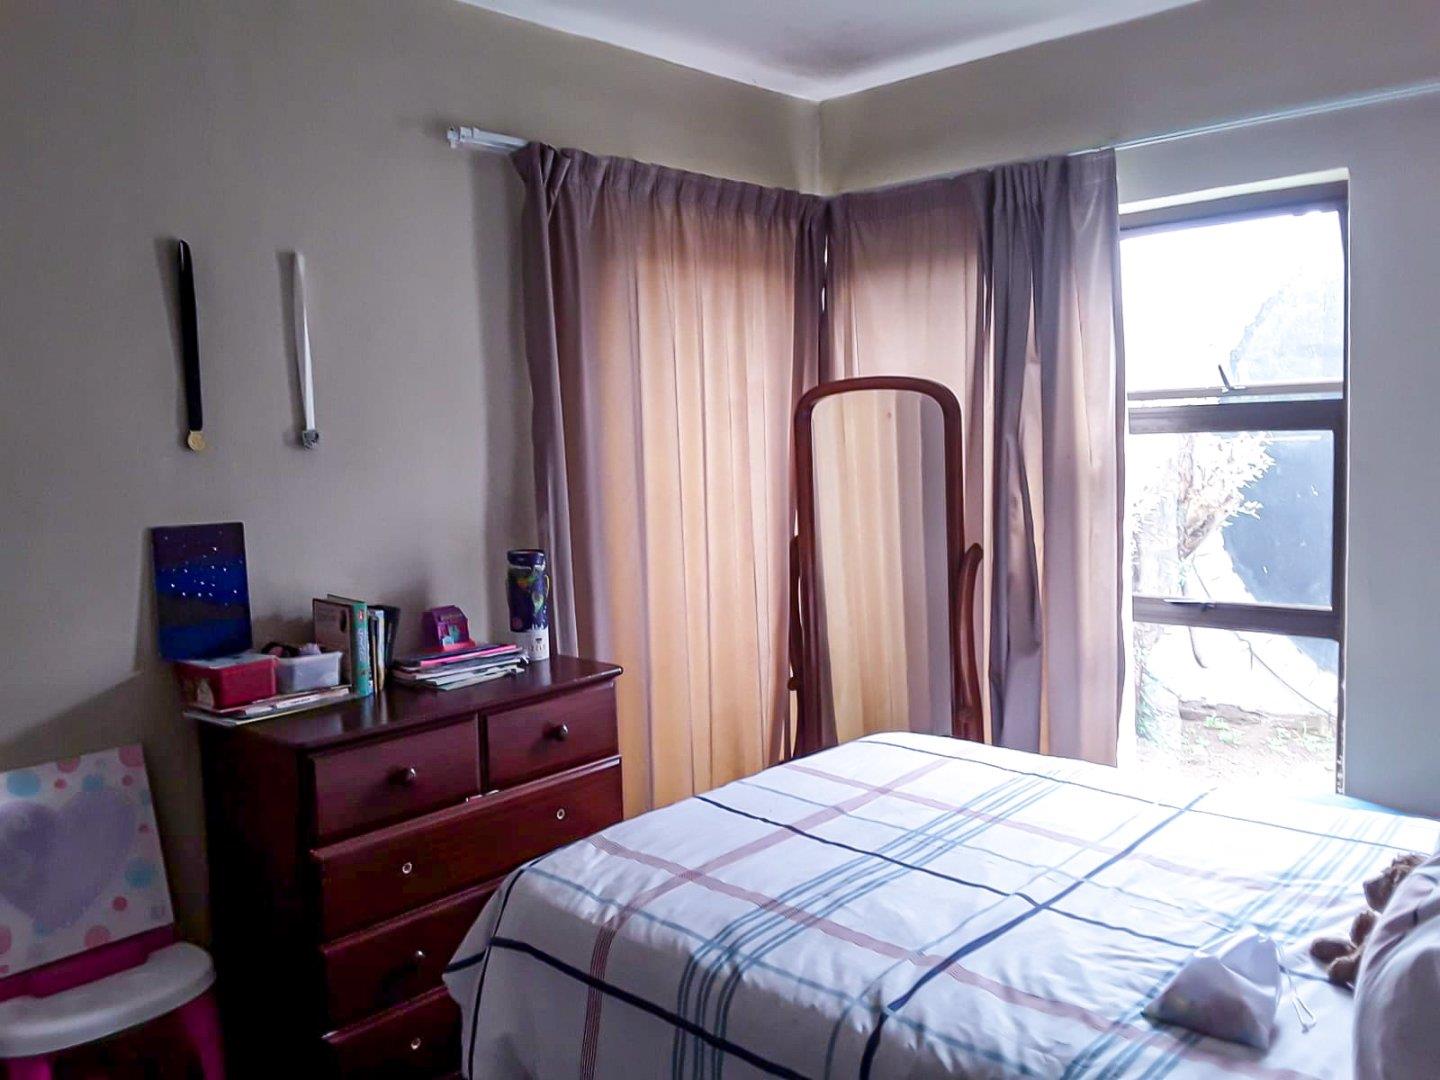 3 Bedroom Property for Sale in Bedfordview Gauteng